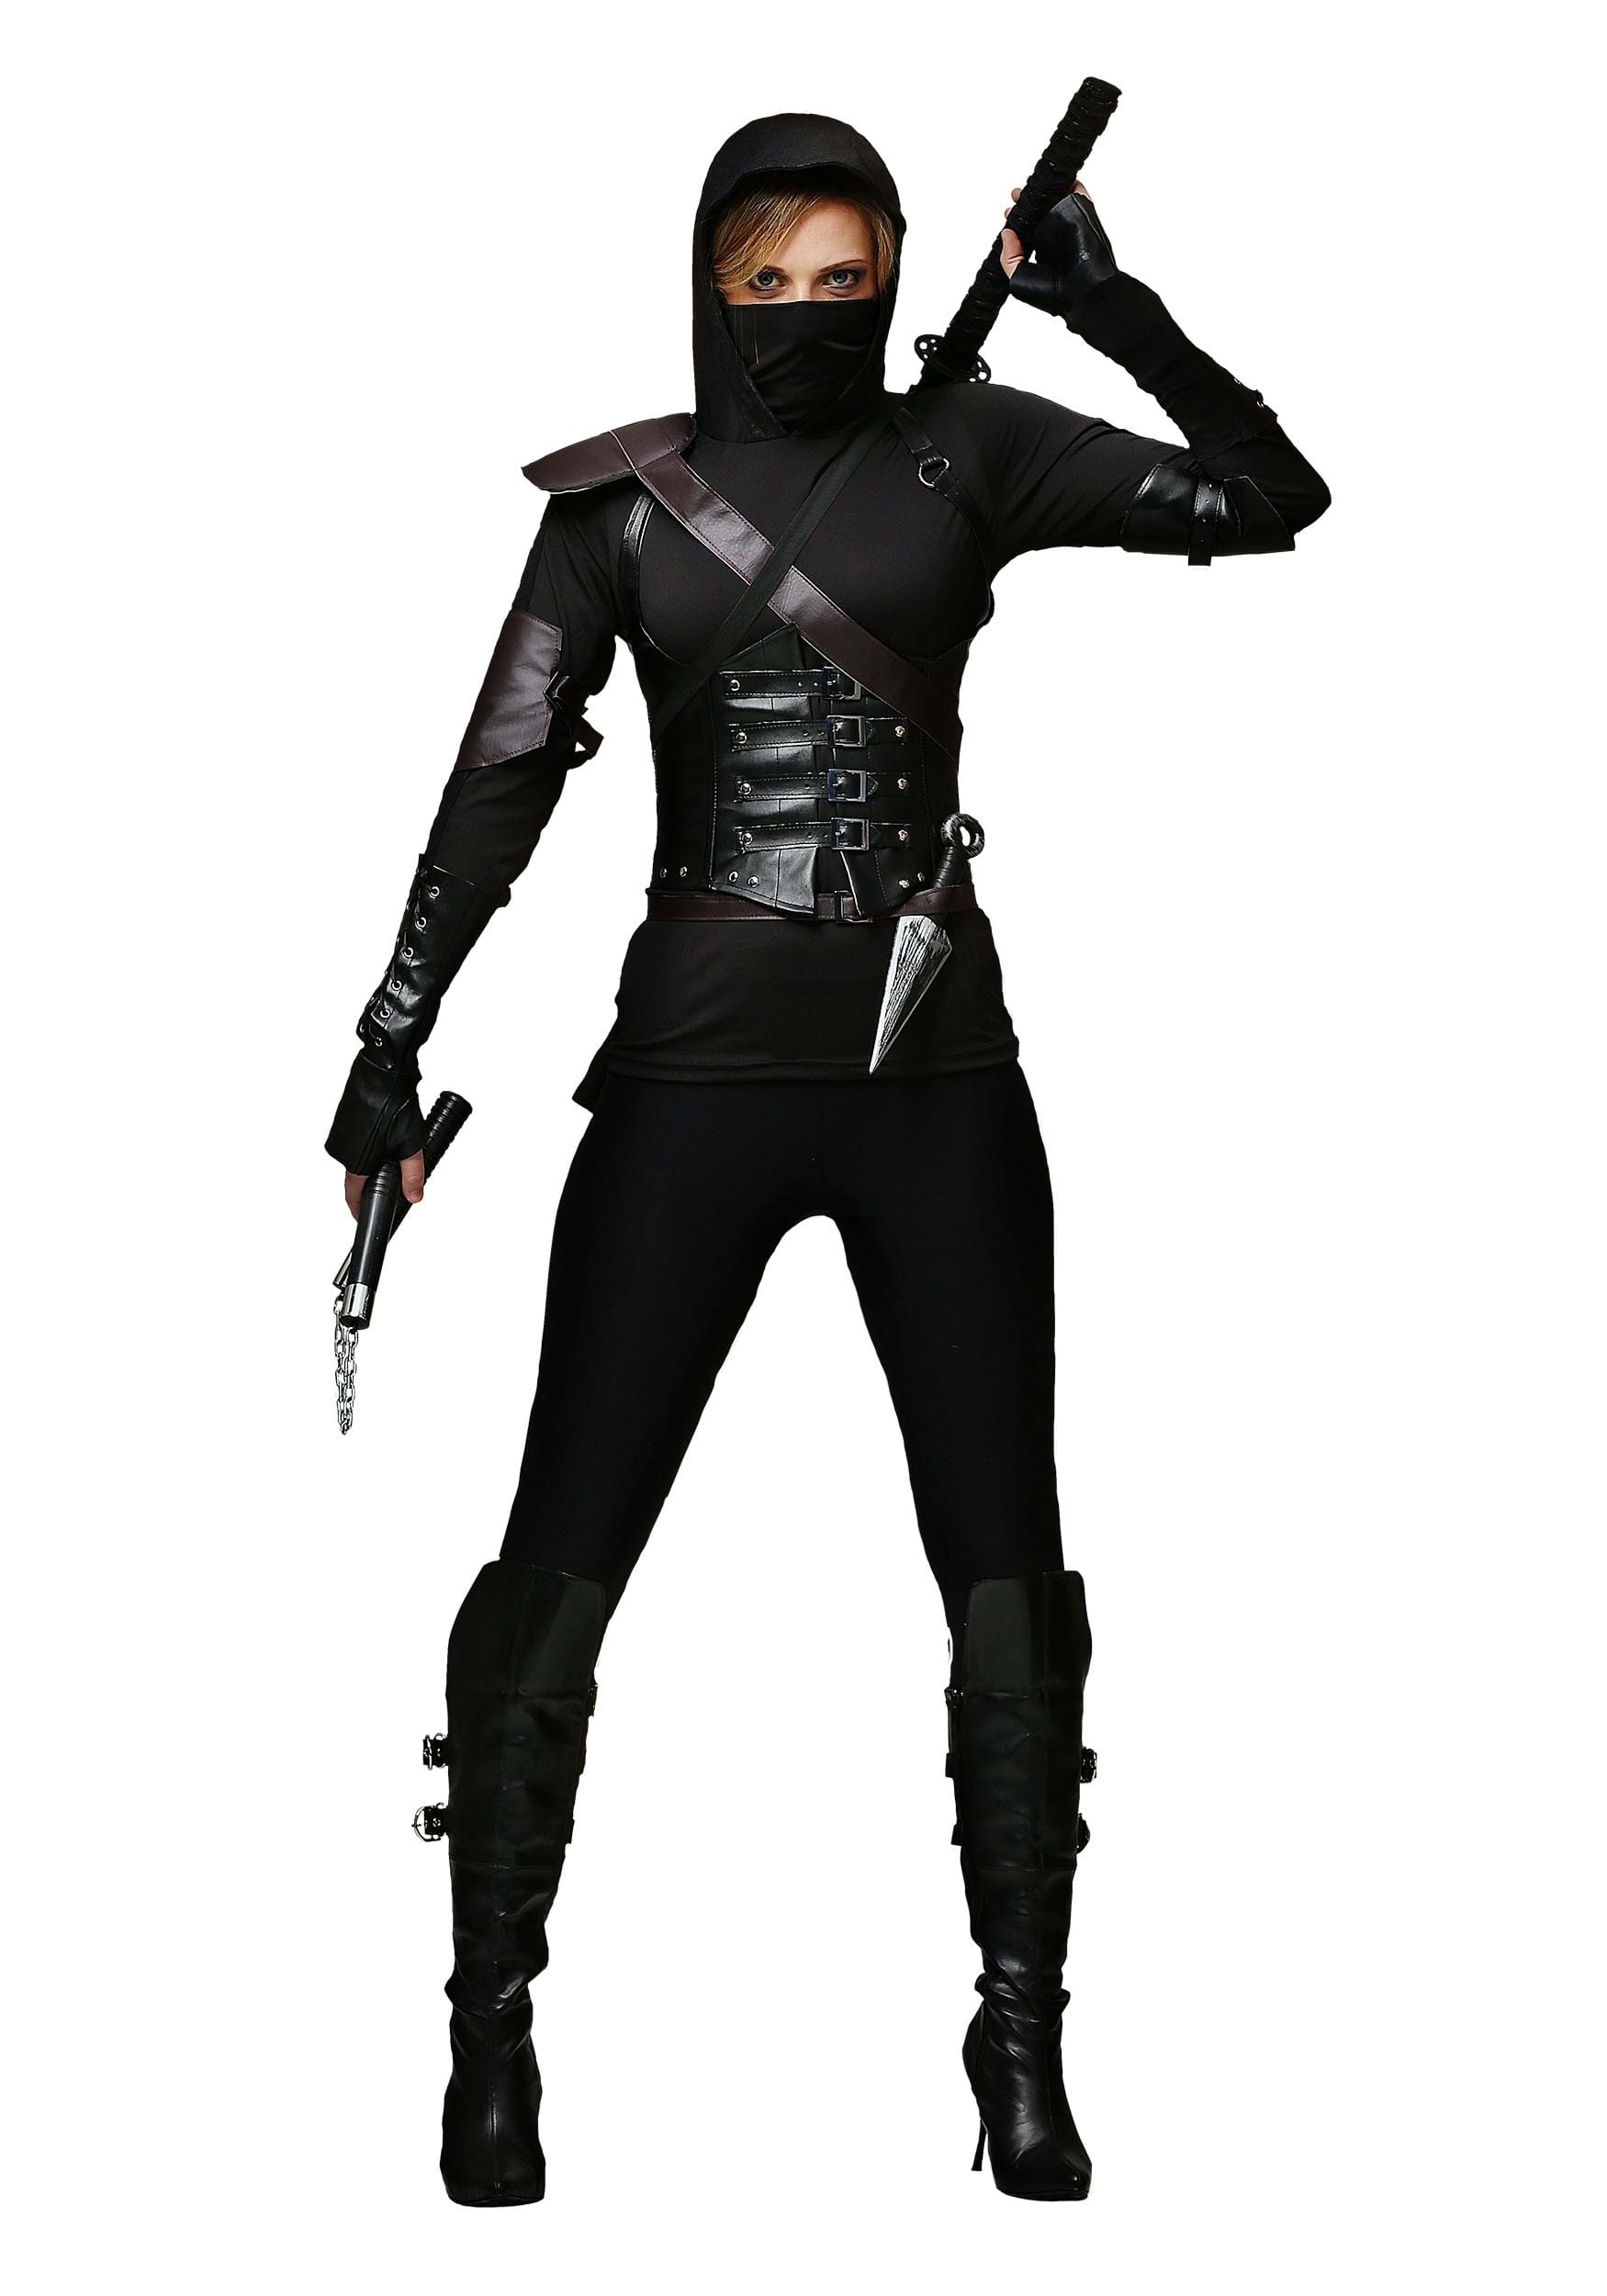 Deadly Ninja Costume, Womens Ninja Costume, Black Ninja, 48% OFF